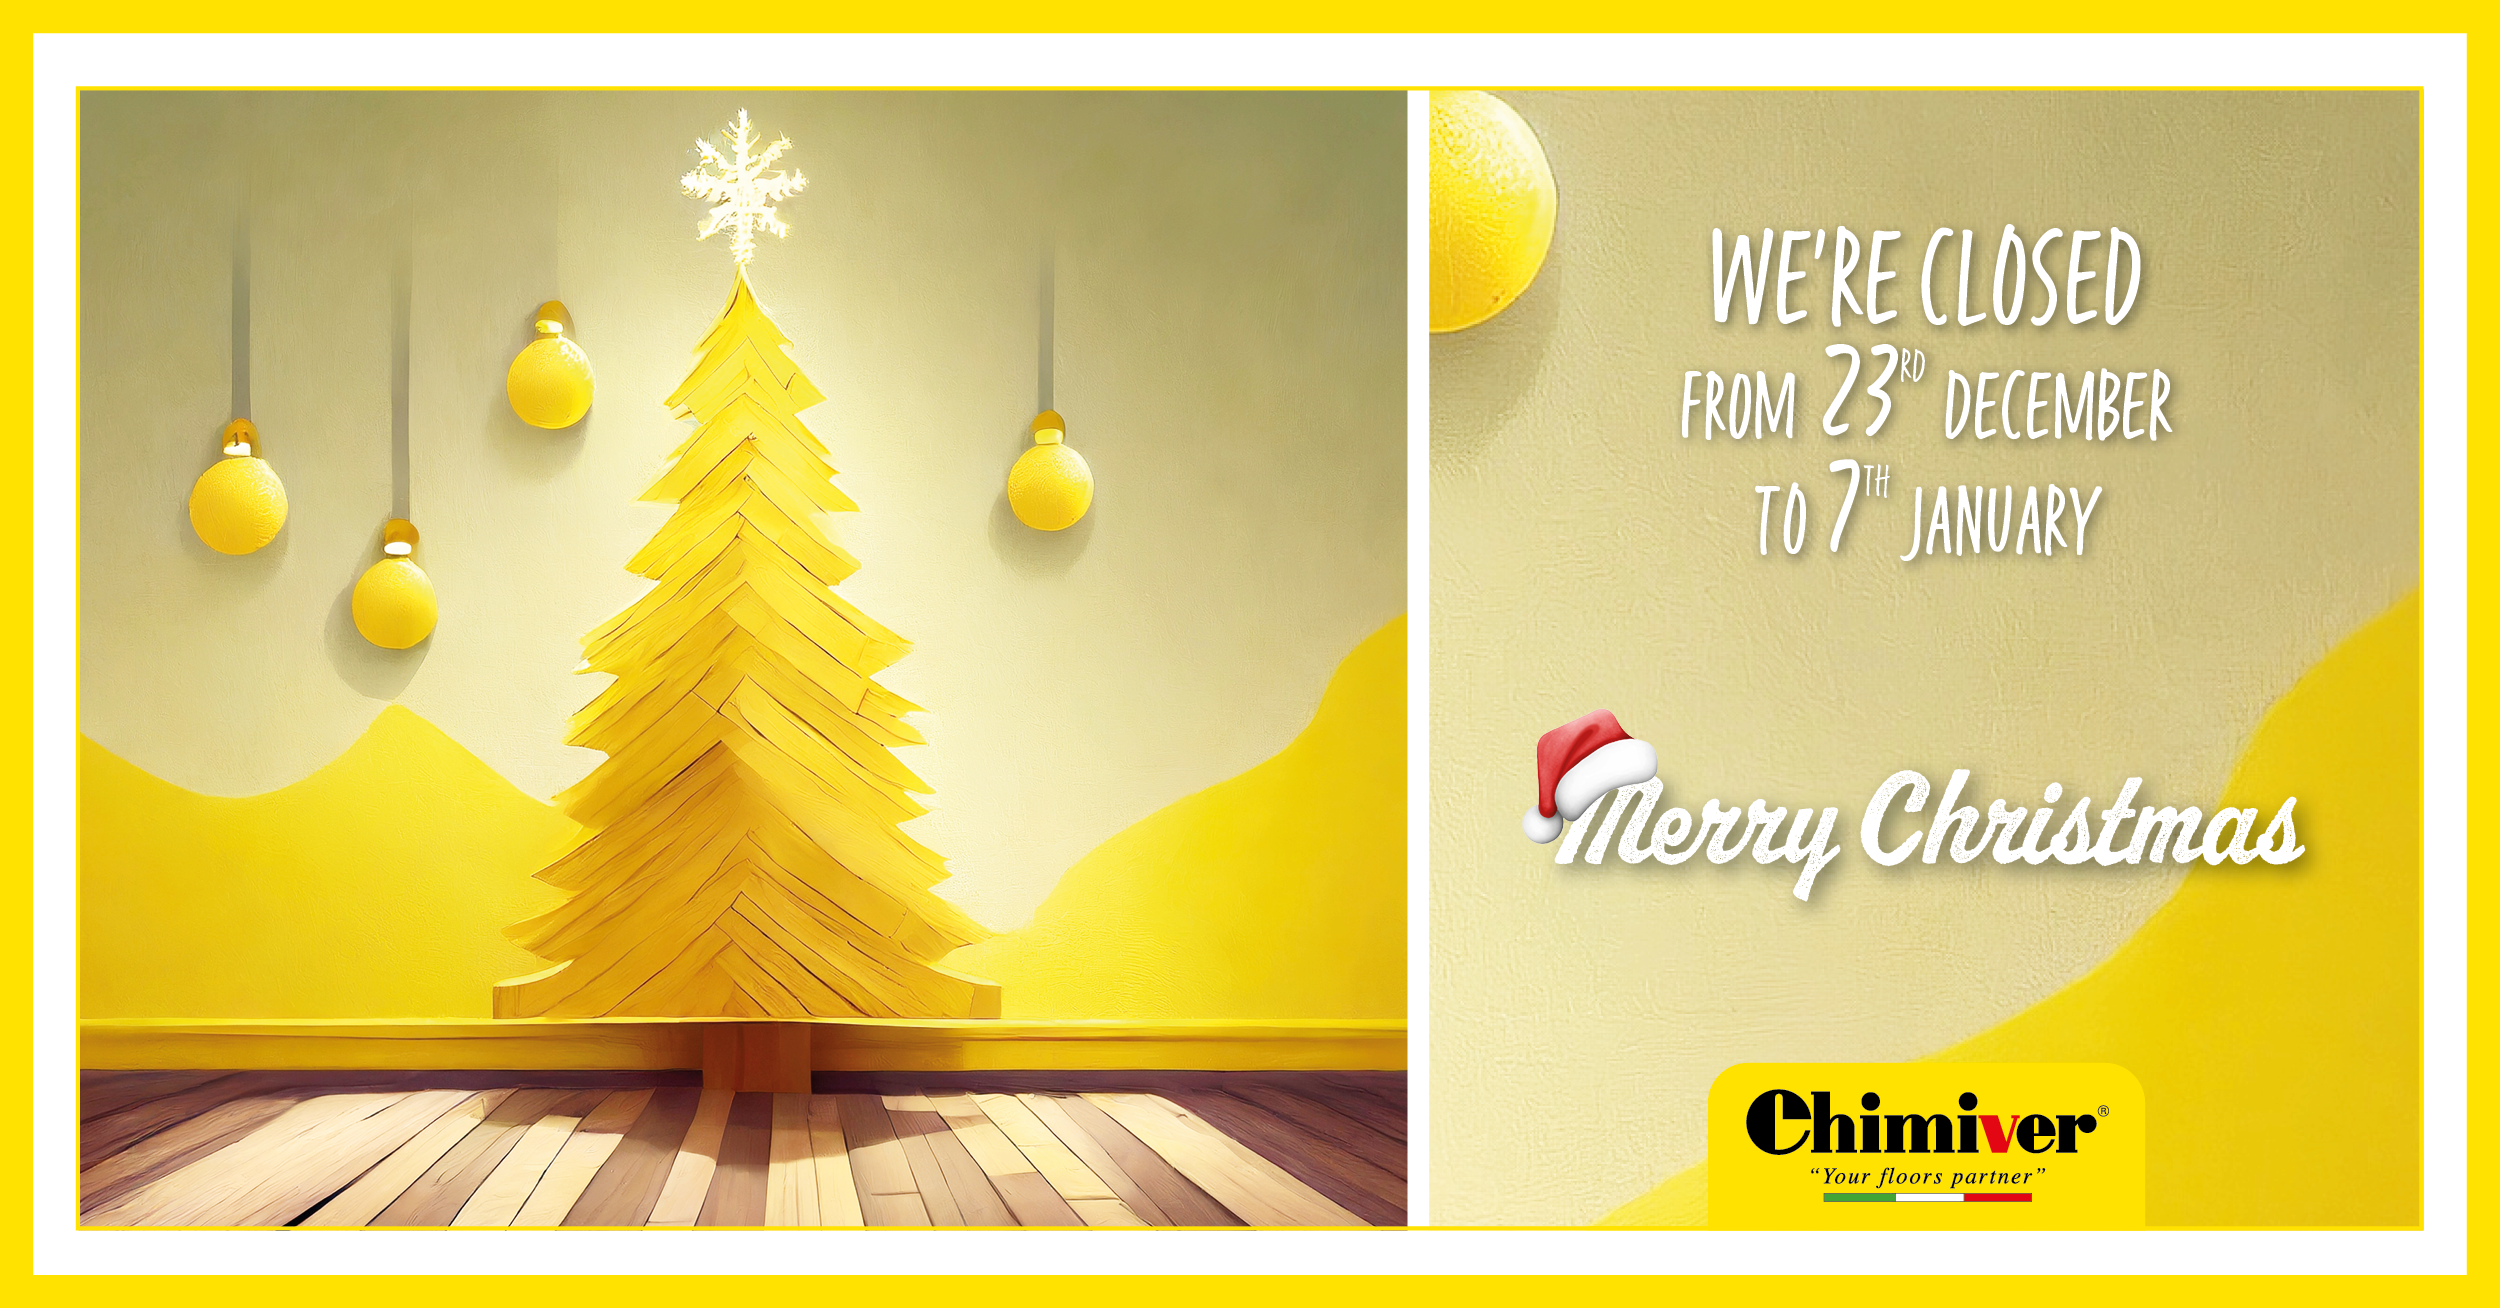 ¡Feliz Navidad desde Chimiver!